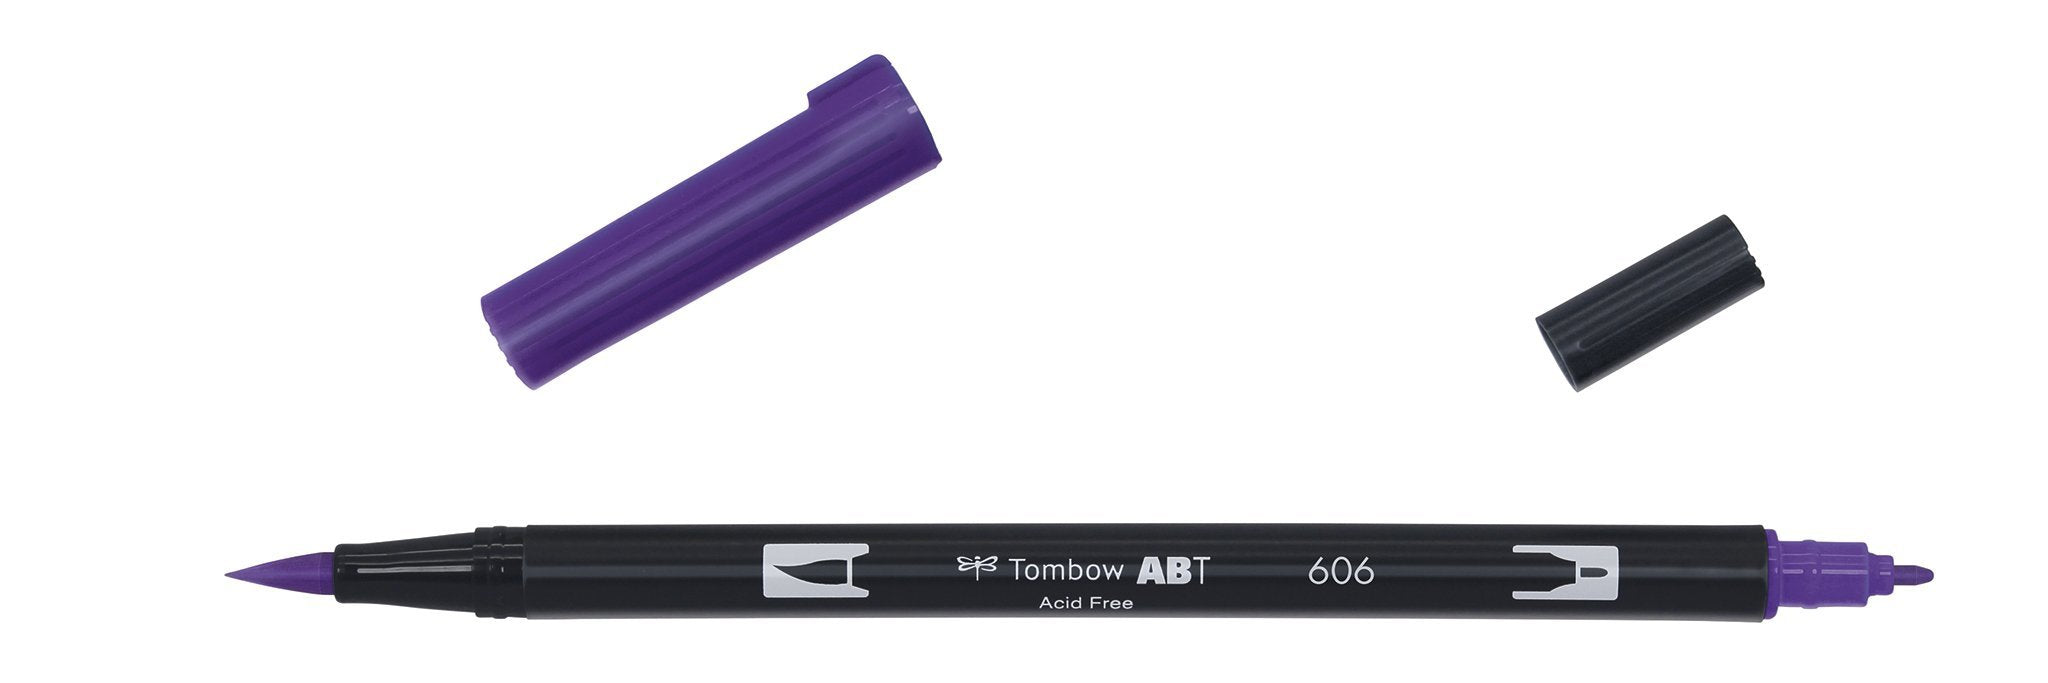 Tombow - ABT-606 Dual Brush Pen - Violet-Stift-DutchMills